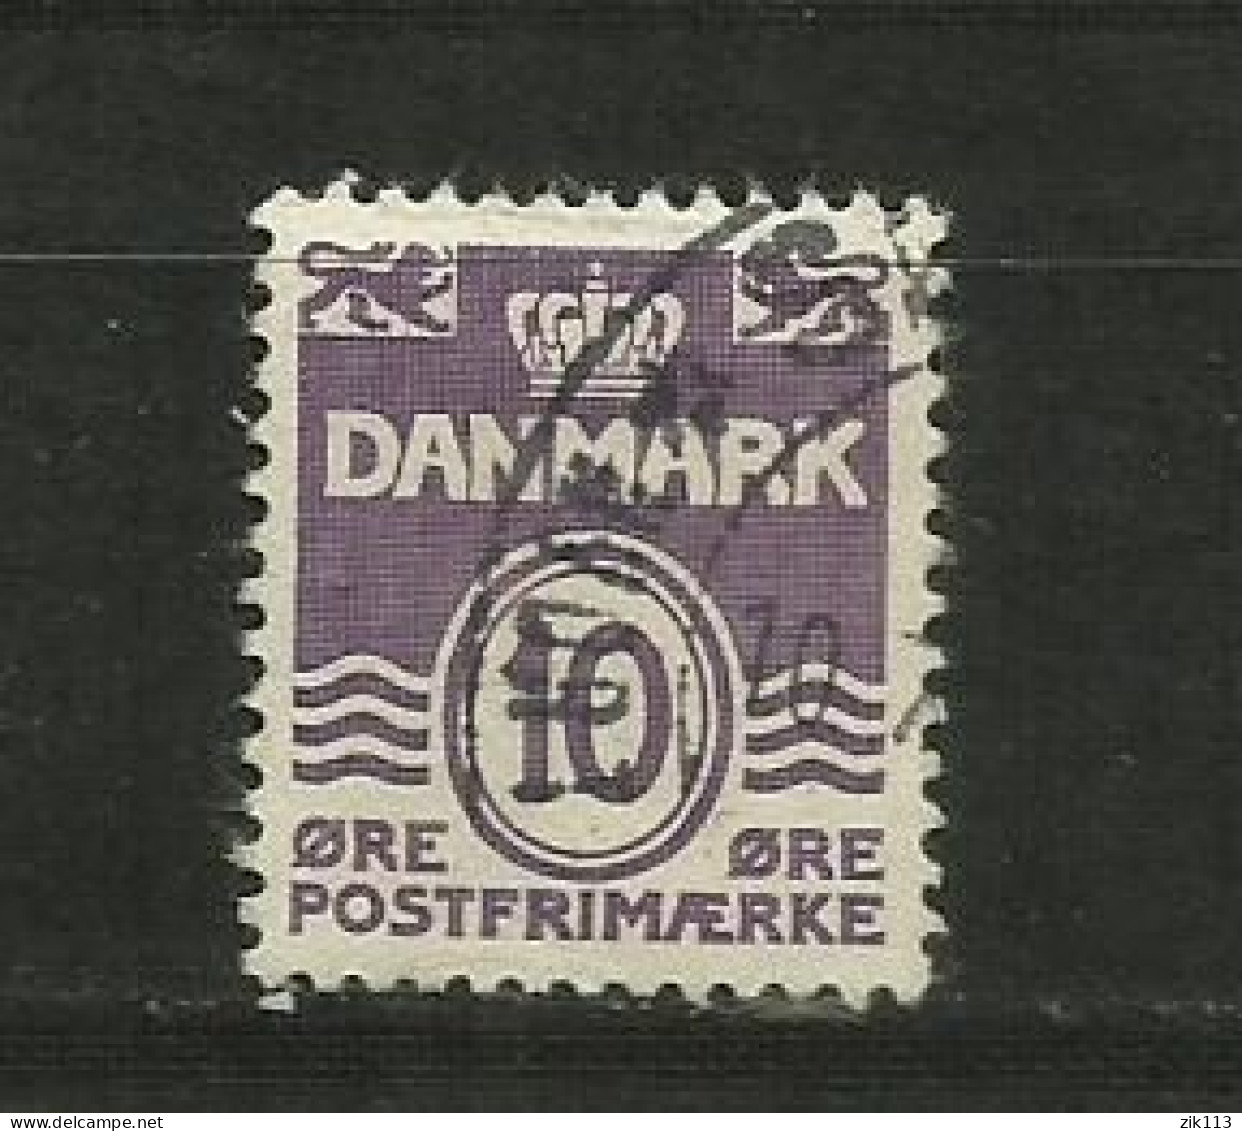 DENMARK  1938 - MI. 246 ,  USED - Oblitérés